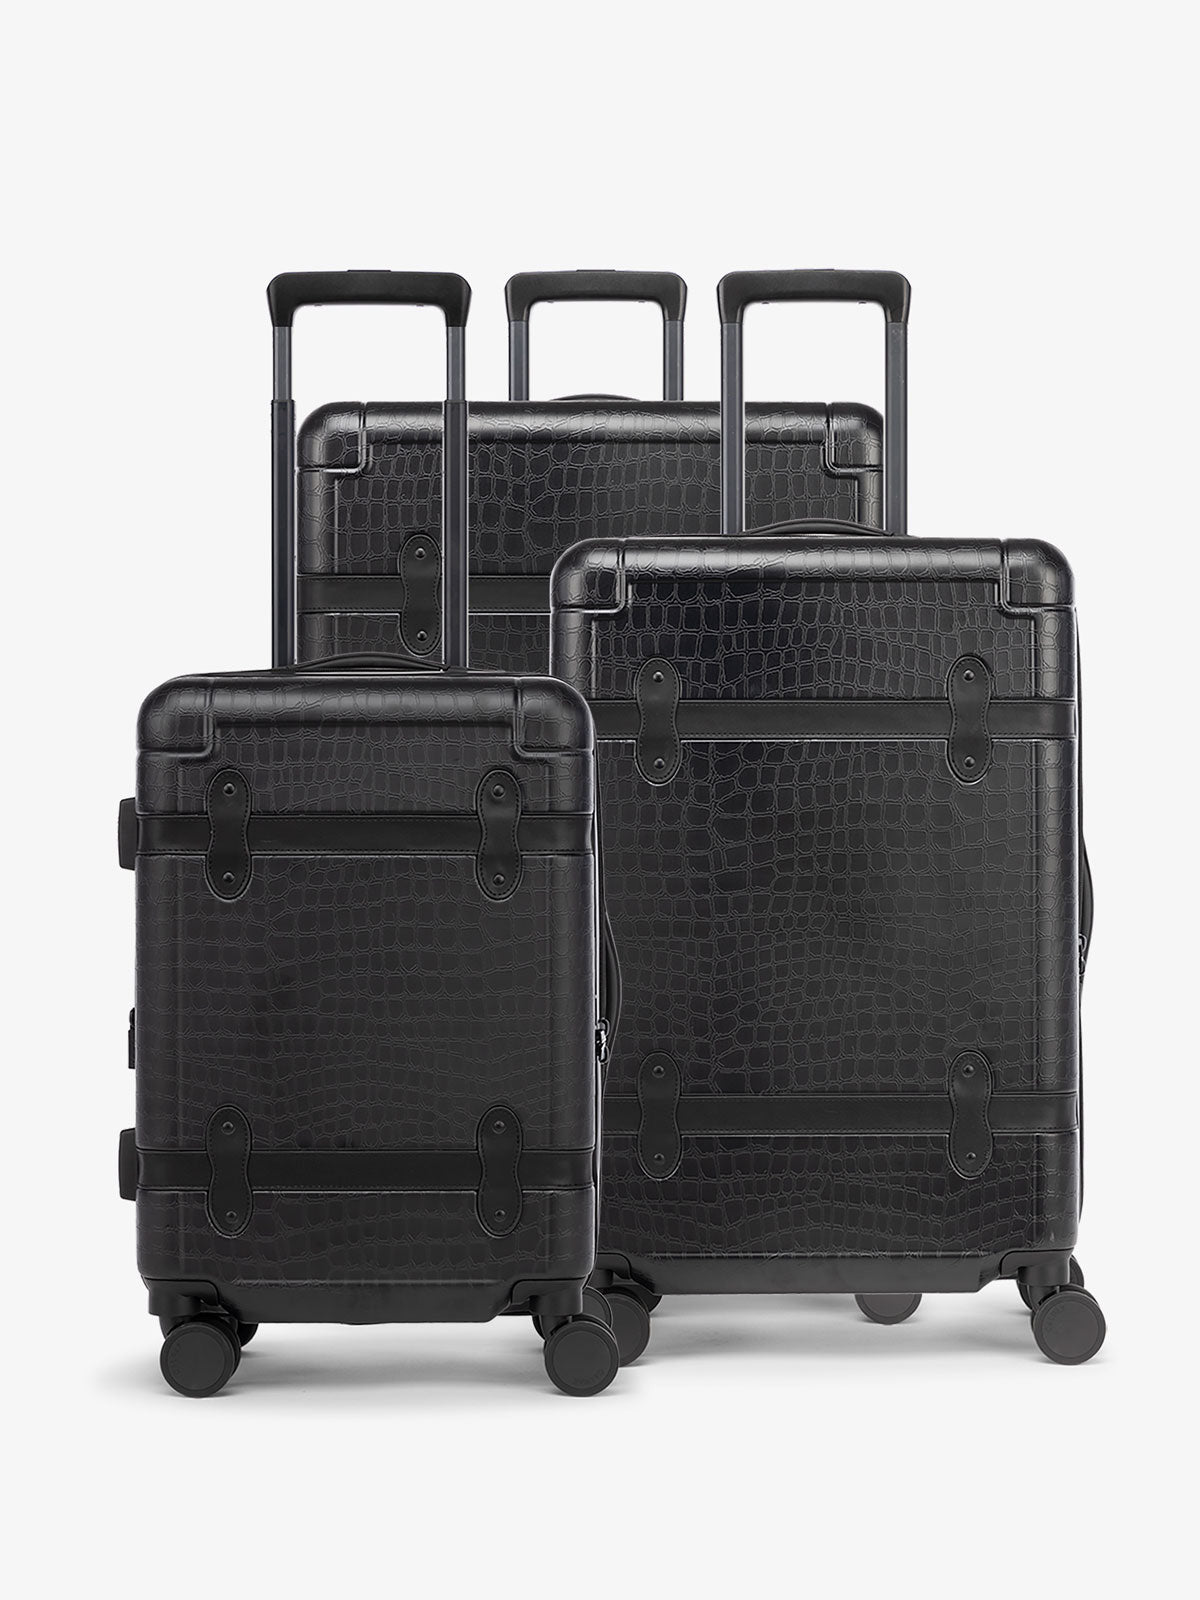 CALPAK set of 3 Trnk black luggage in vintage trunk style